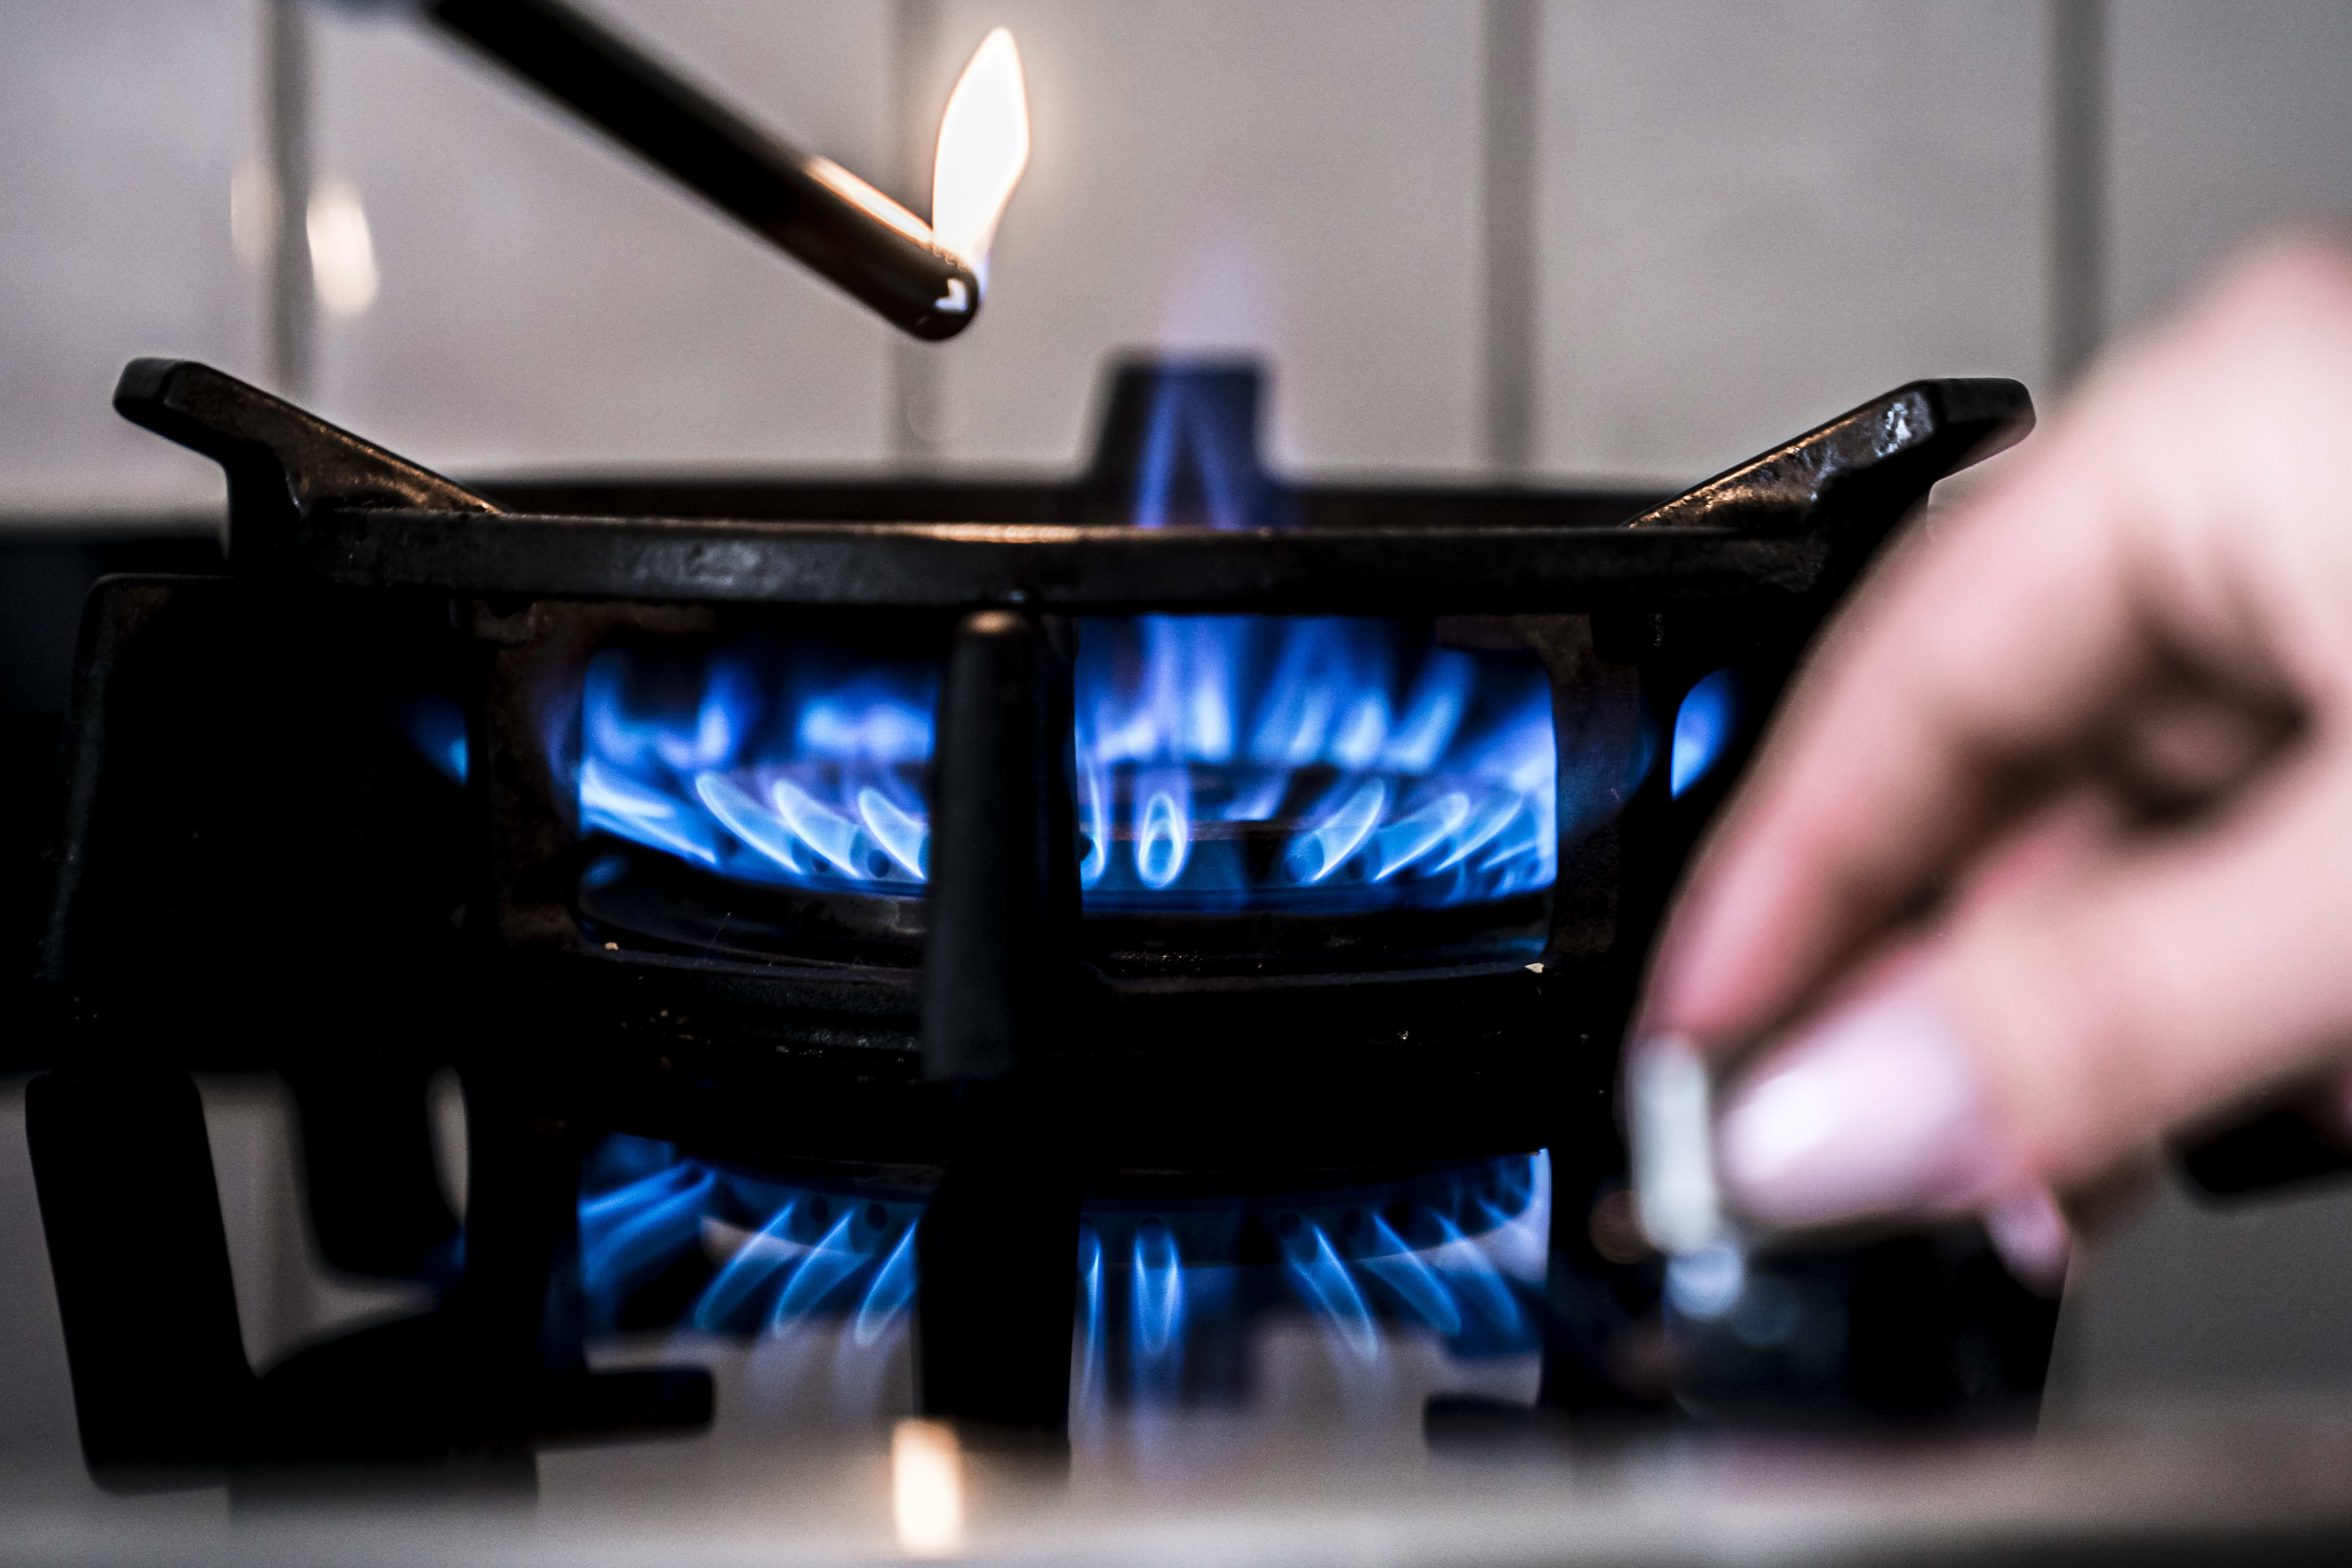 Nederlandse huishoudens verbruikten vorig jaar opnieuw minder gas